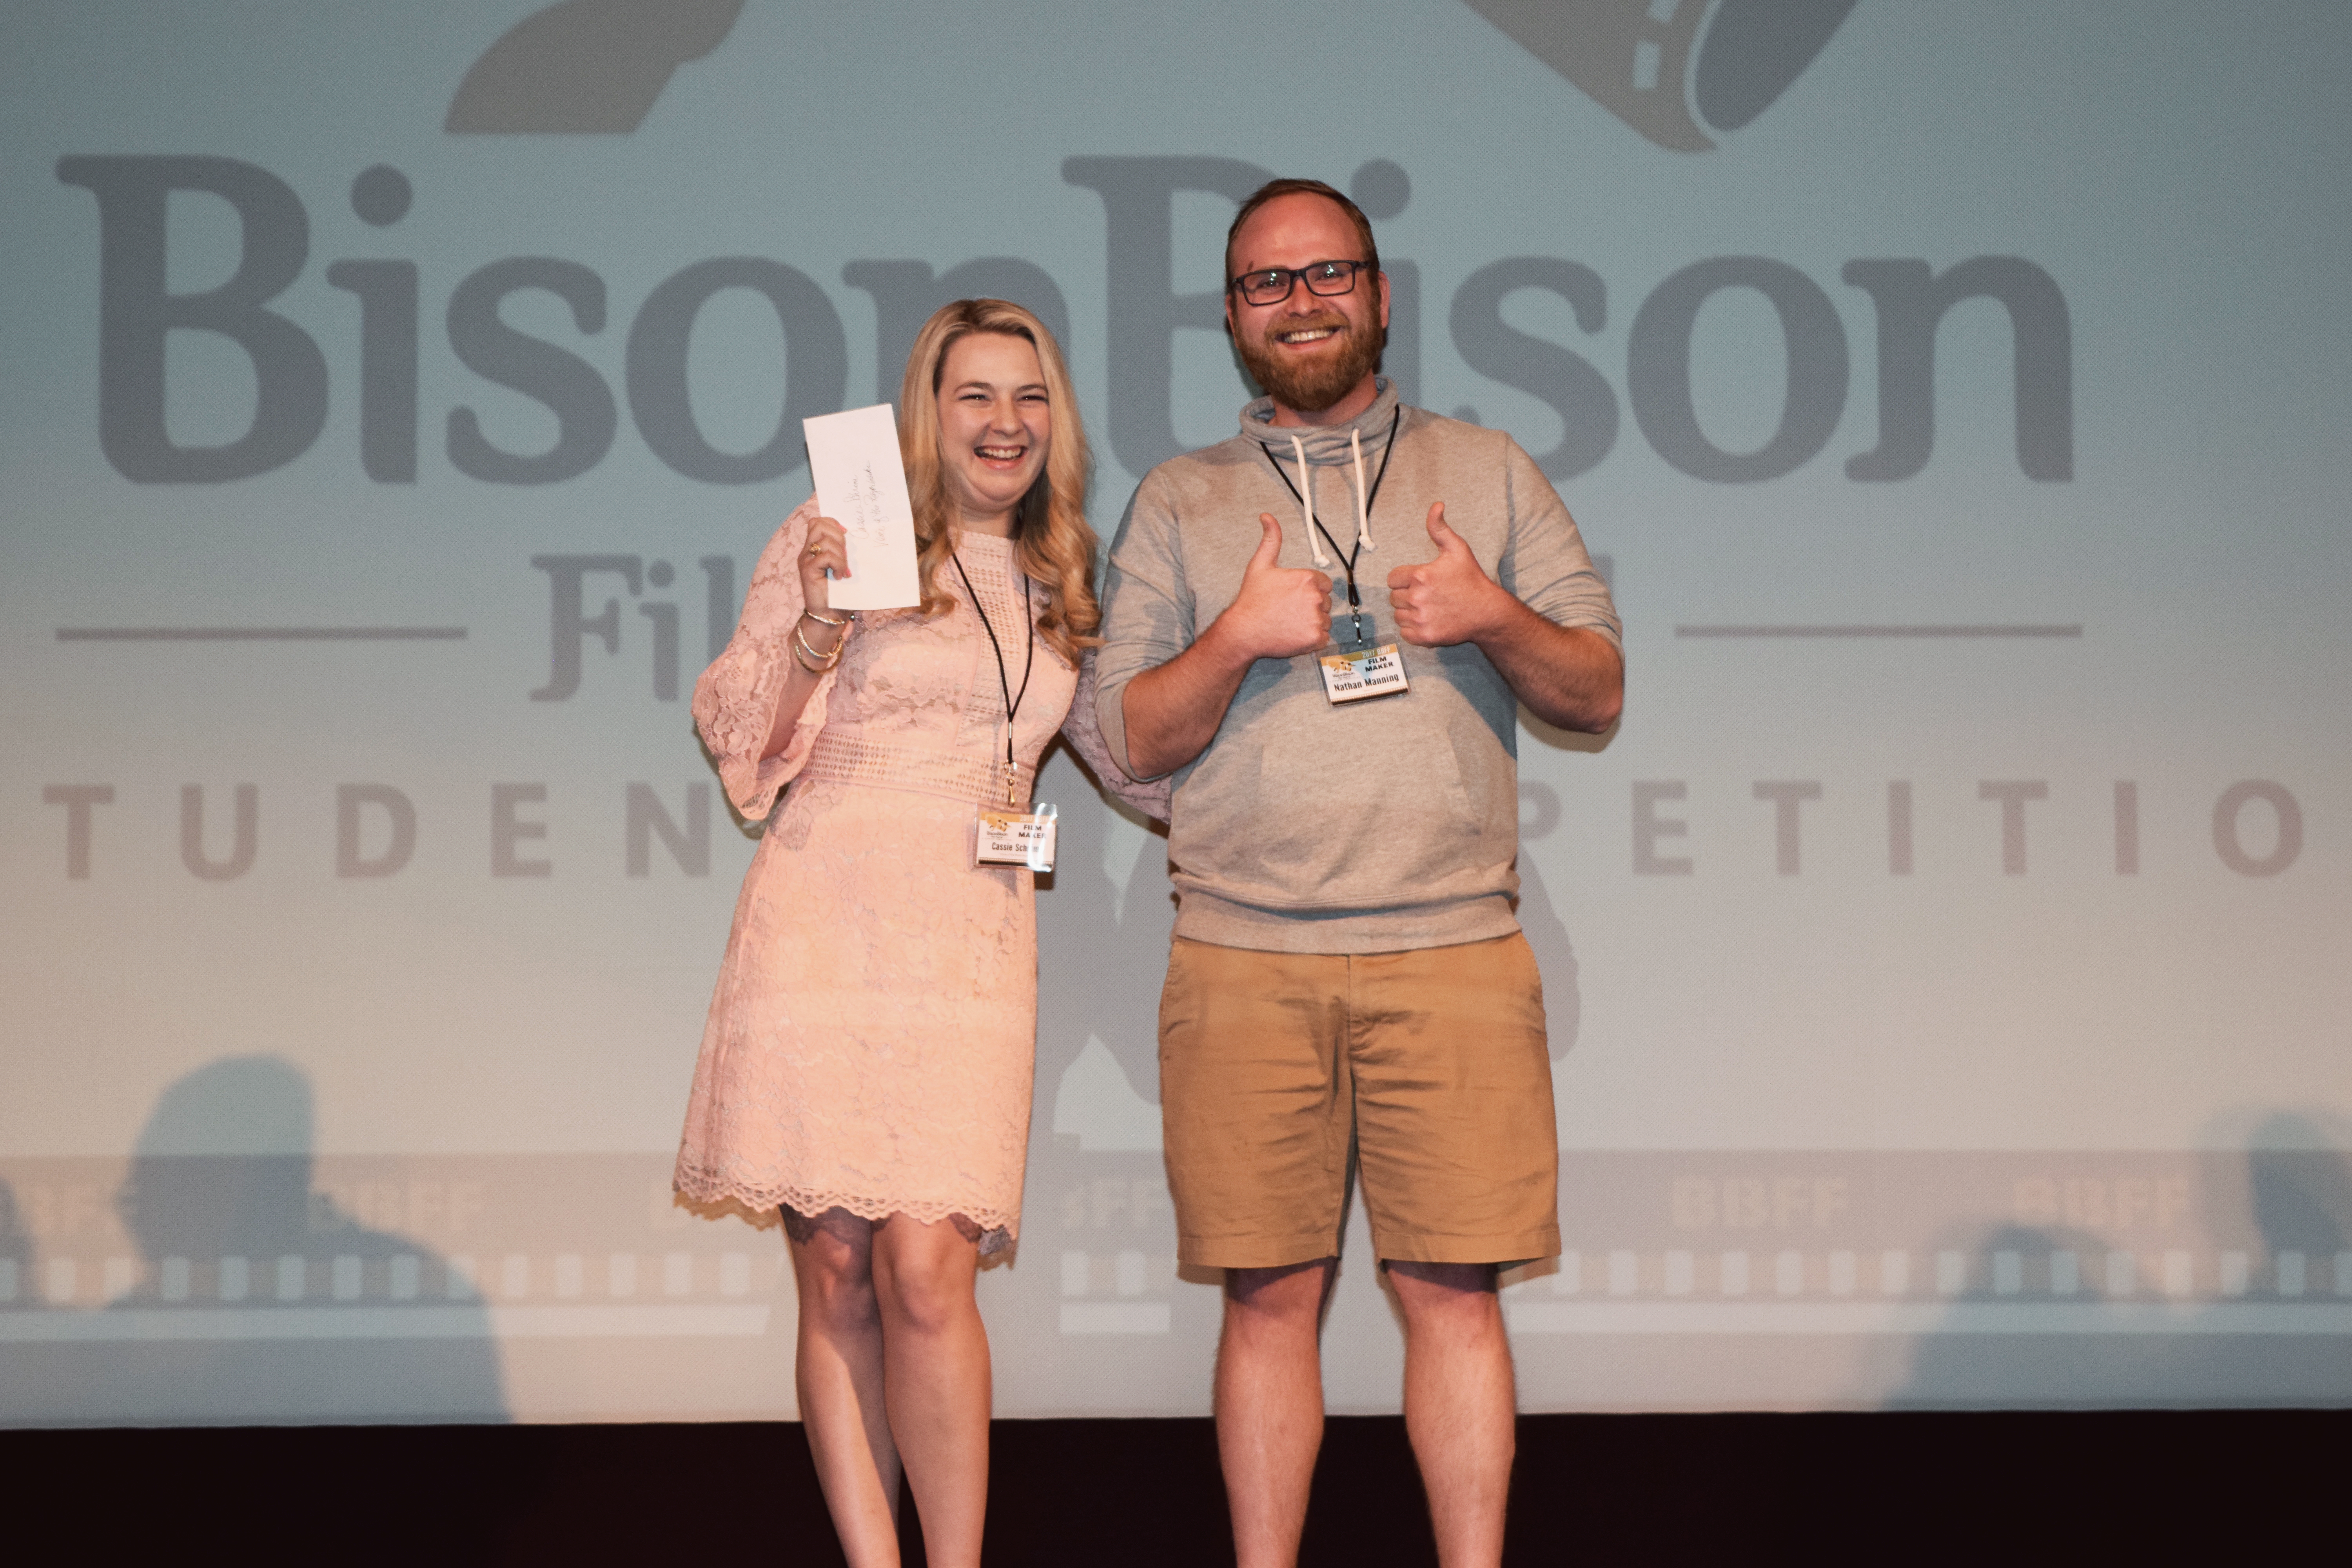 Bison Bison Film Festival winners named